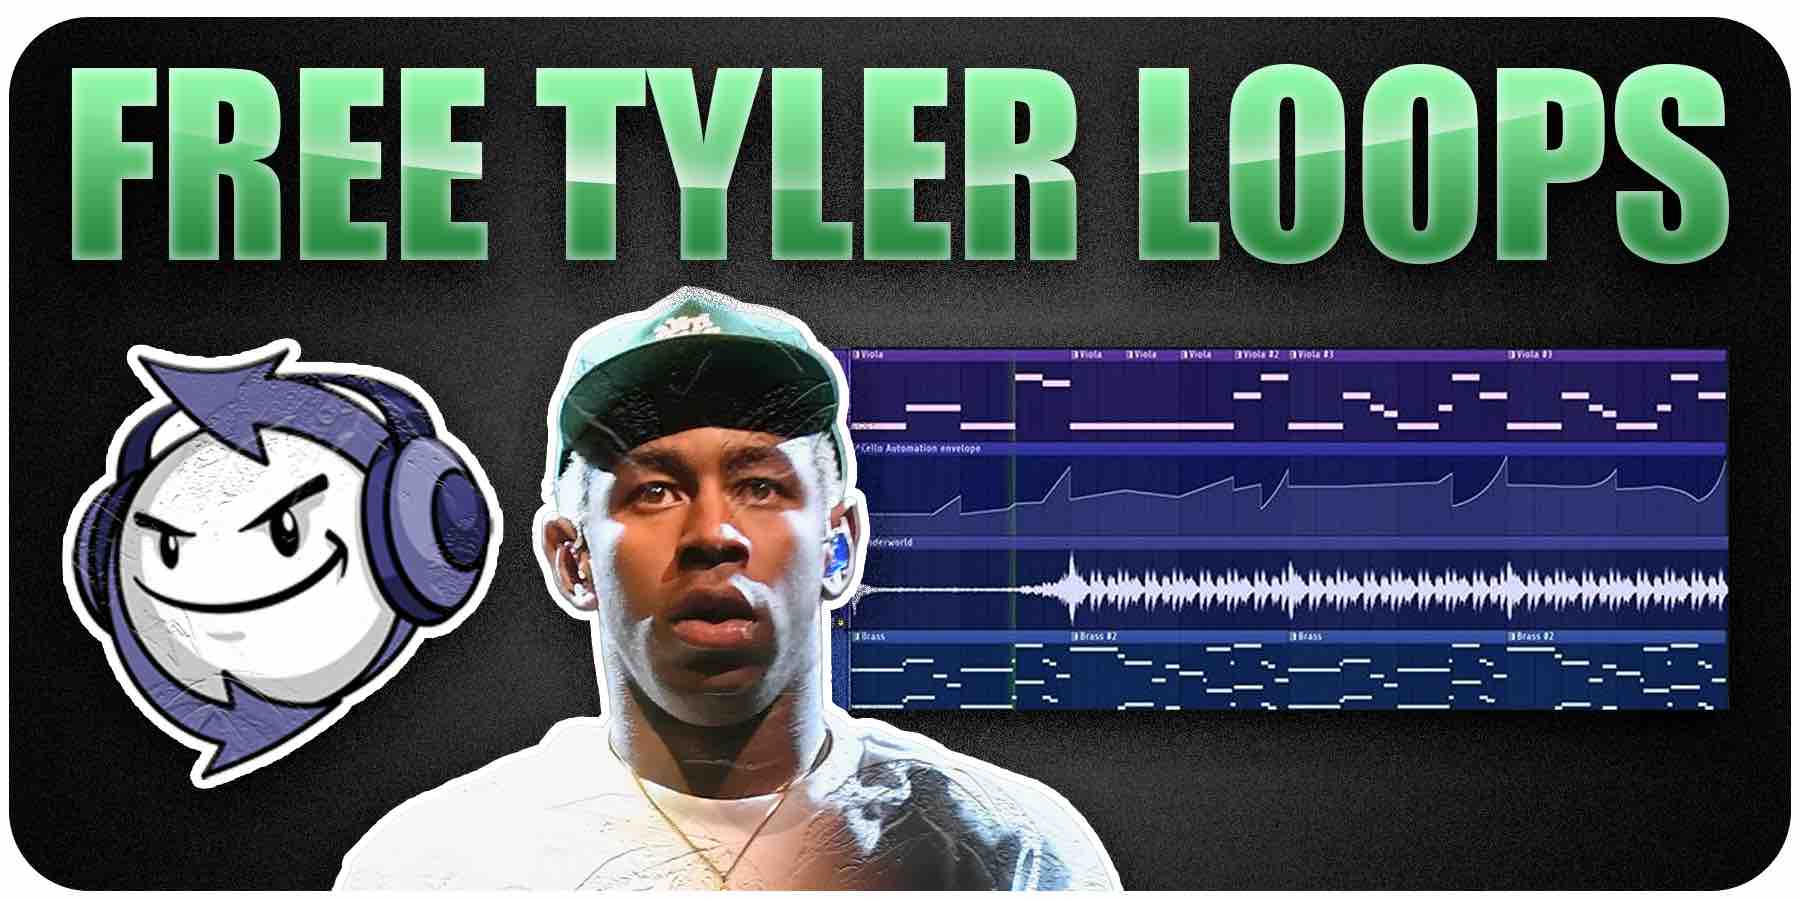 Free Tyler The Creator Loop Samples